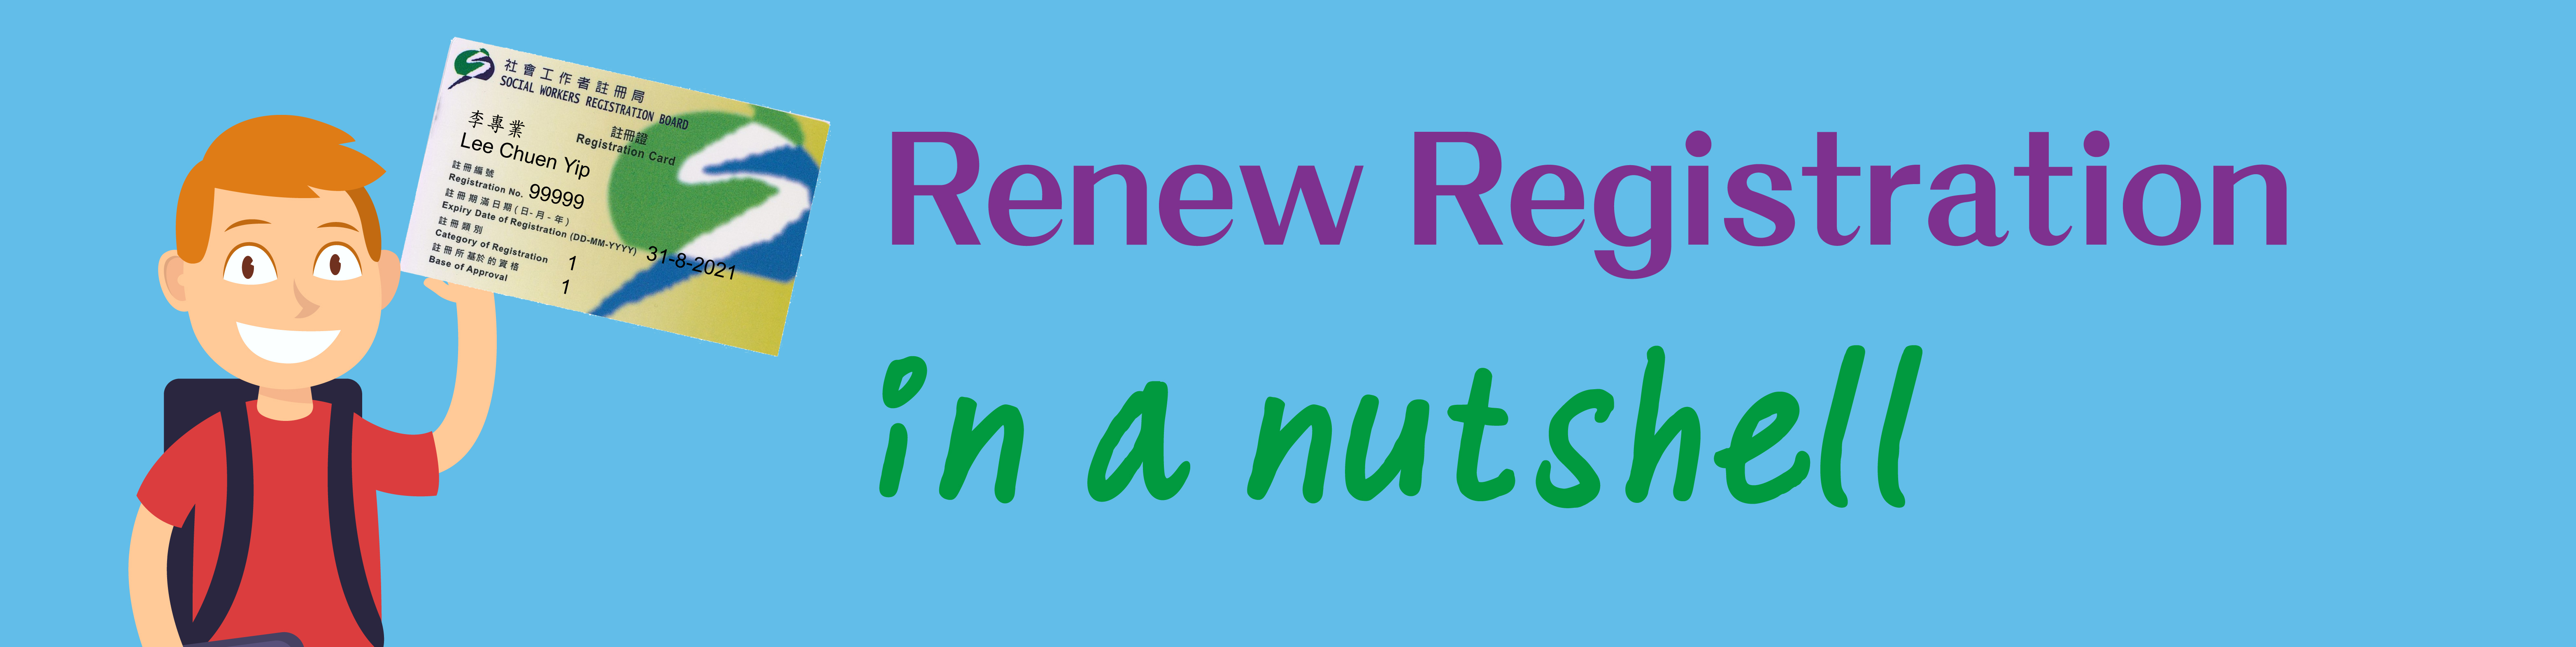 Renew Registration in a nutshell